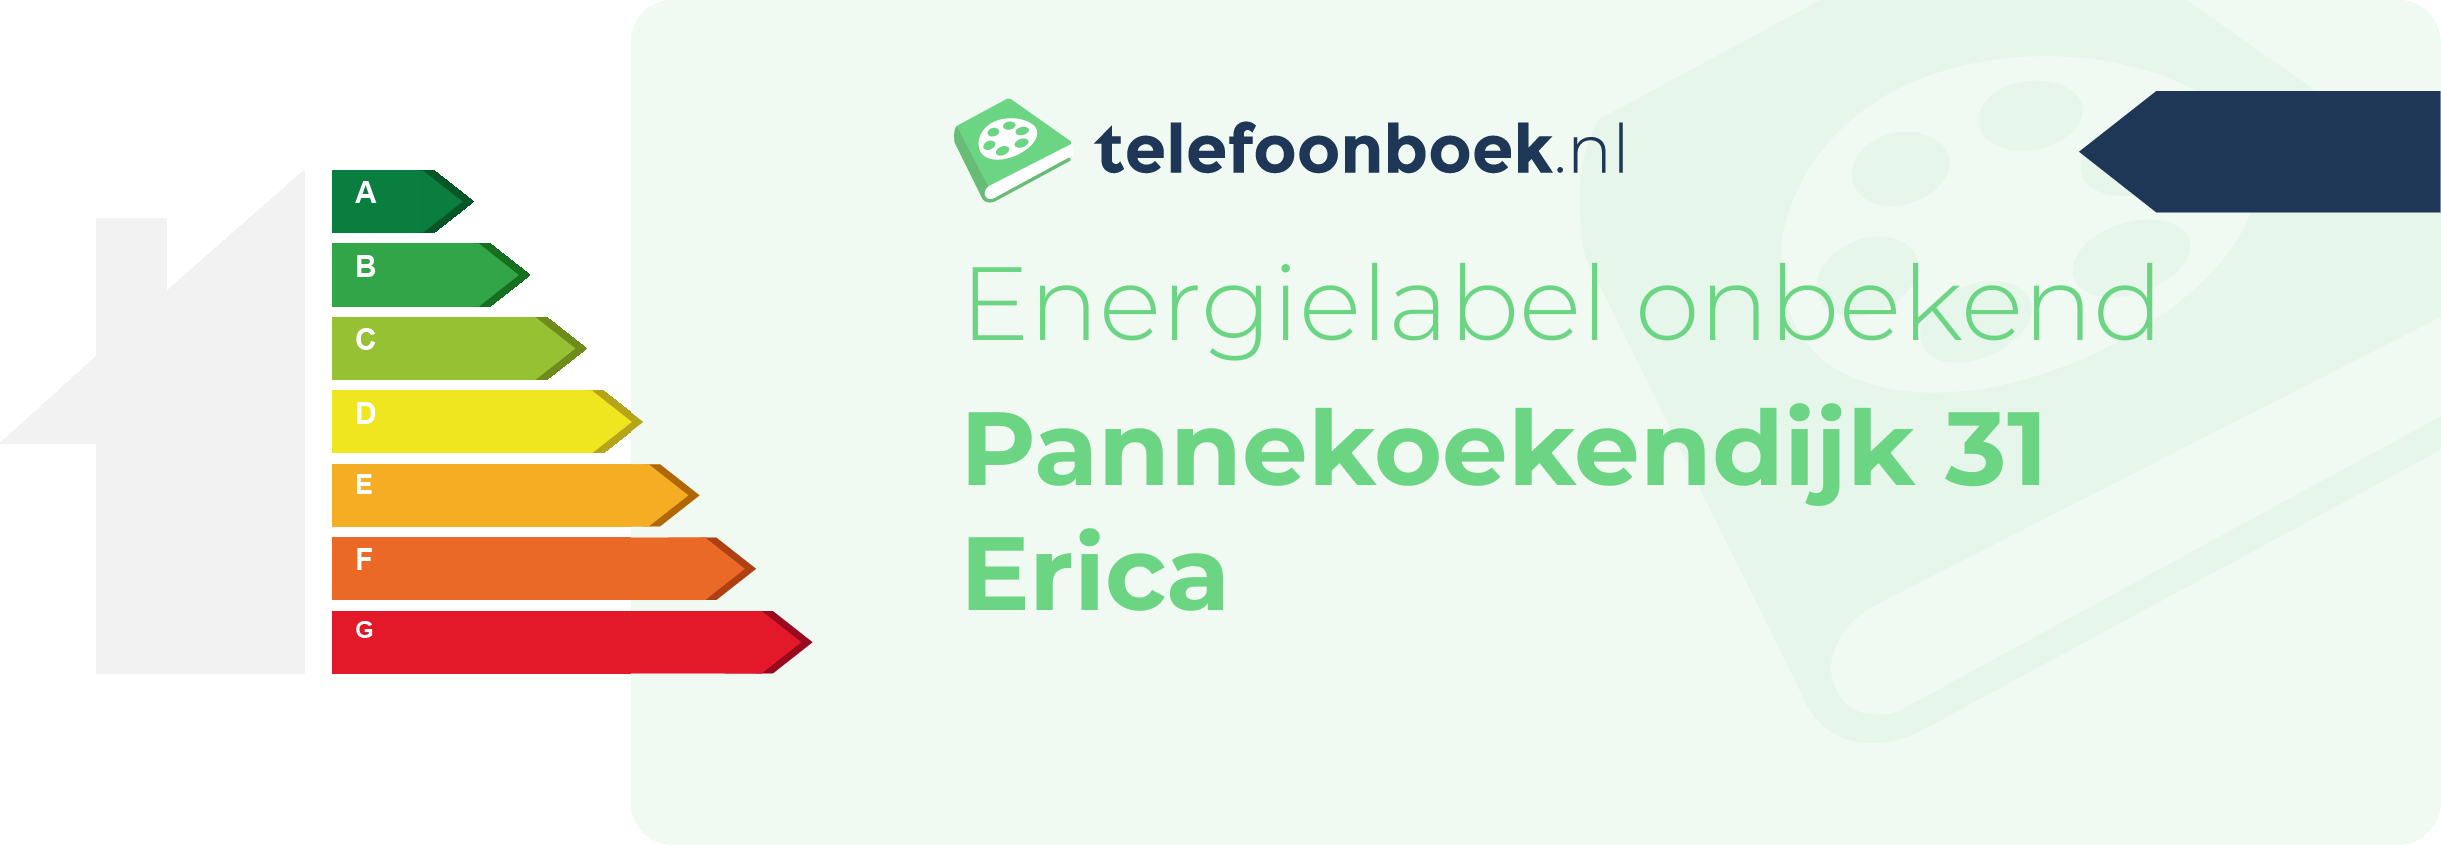 Energielabel Pannekoekendijk 31 Erica